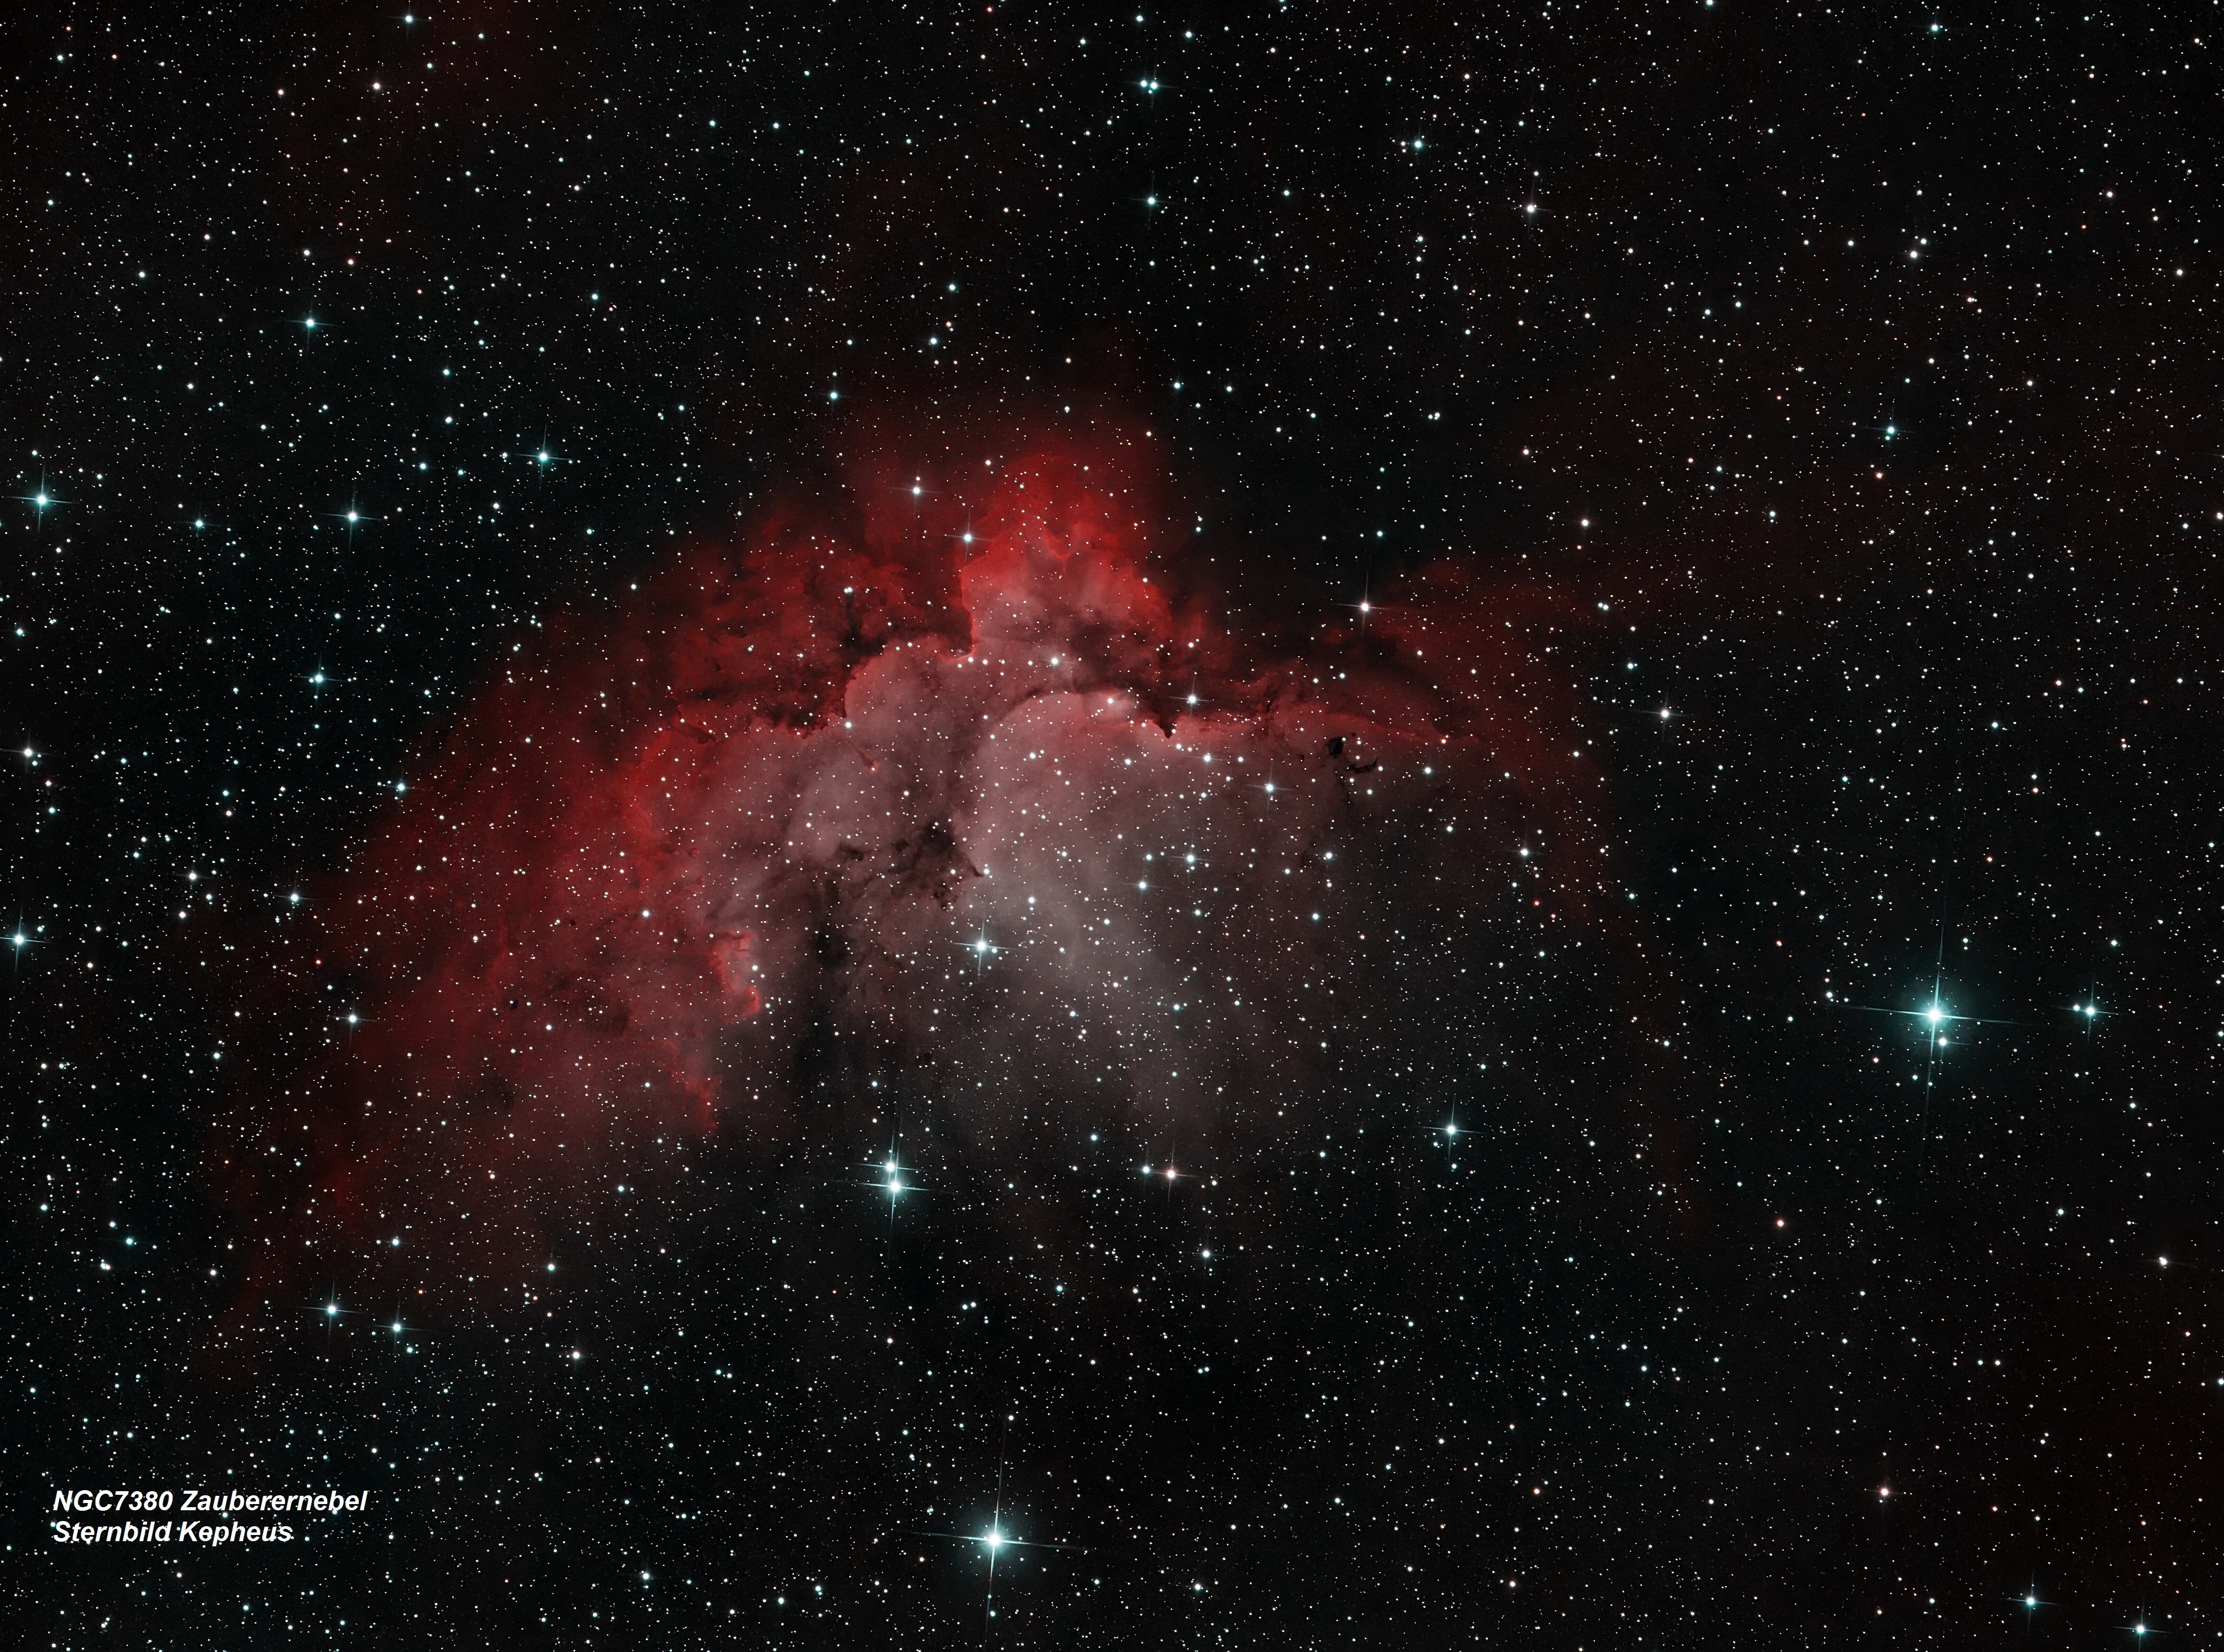 NGC7380 Zauberernebel